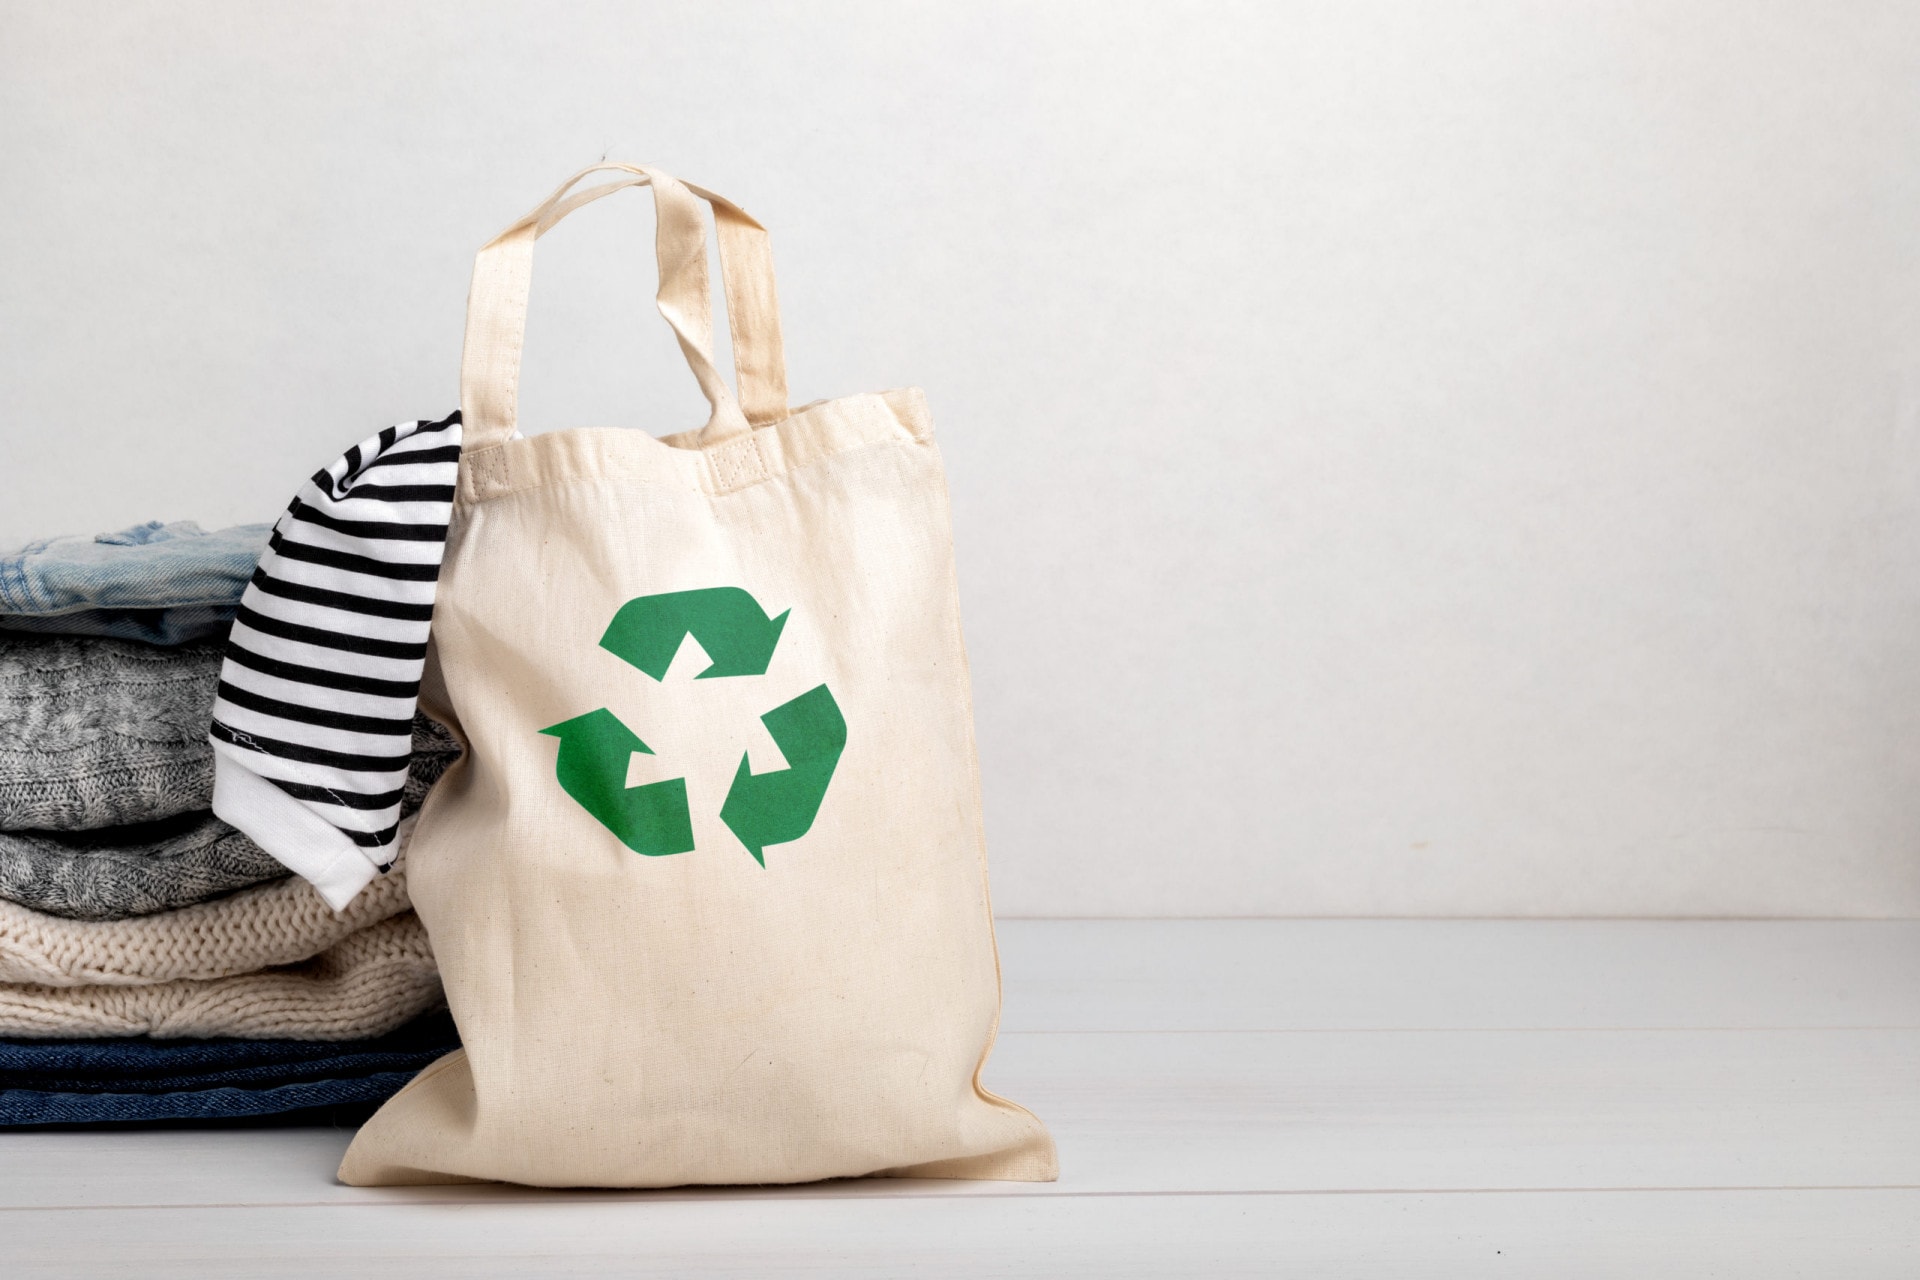 economia circular, ecobag com símbolo de reciclagem com roupas